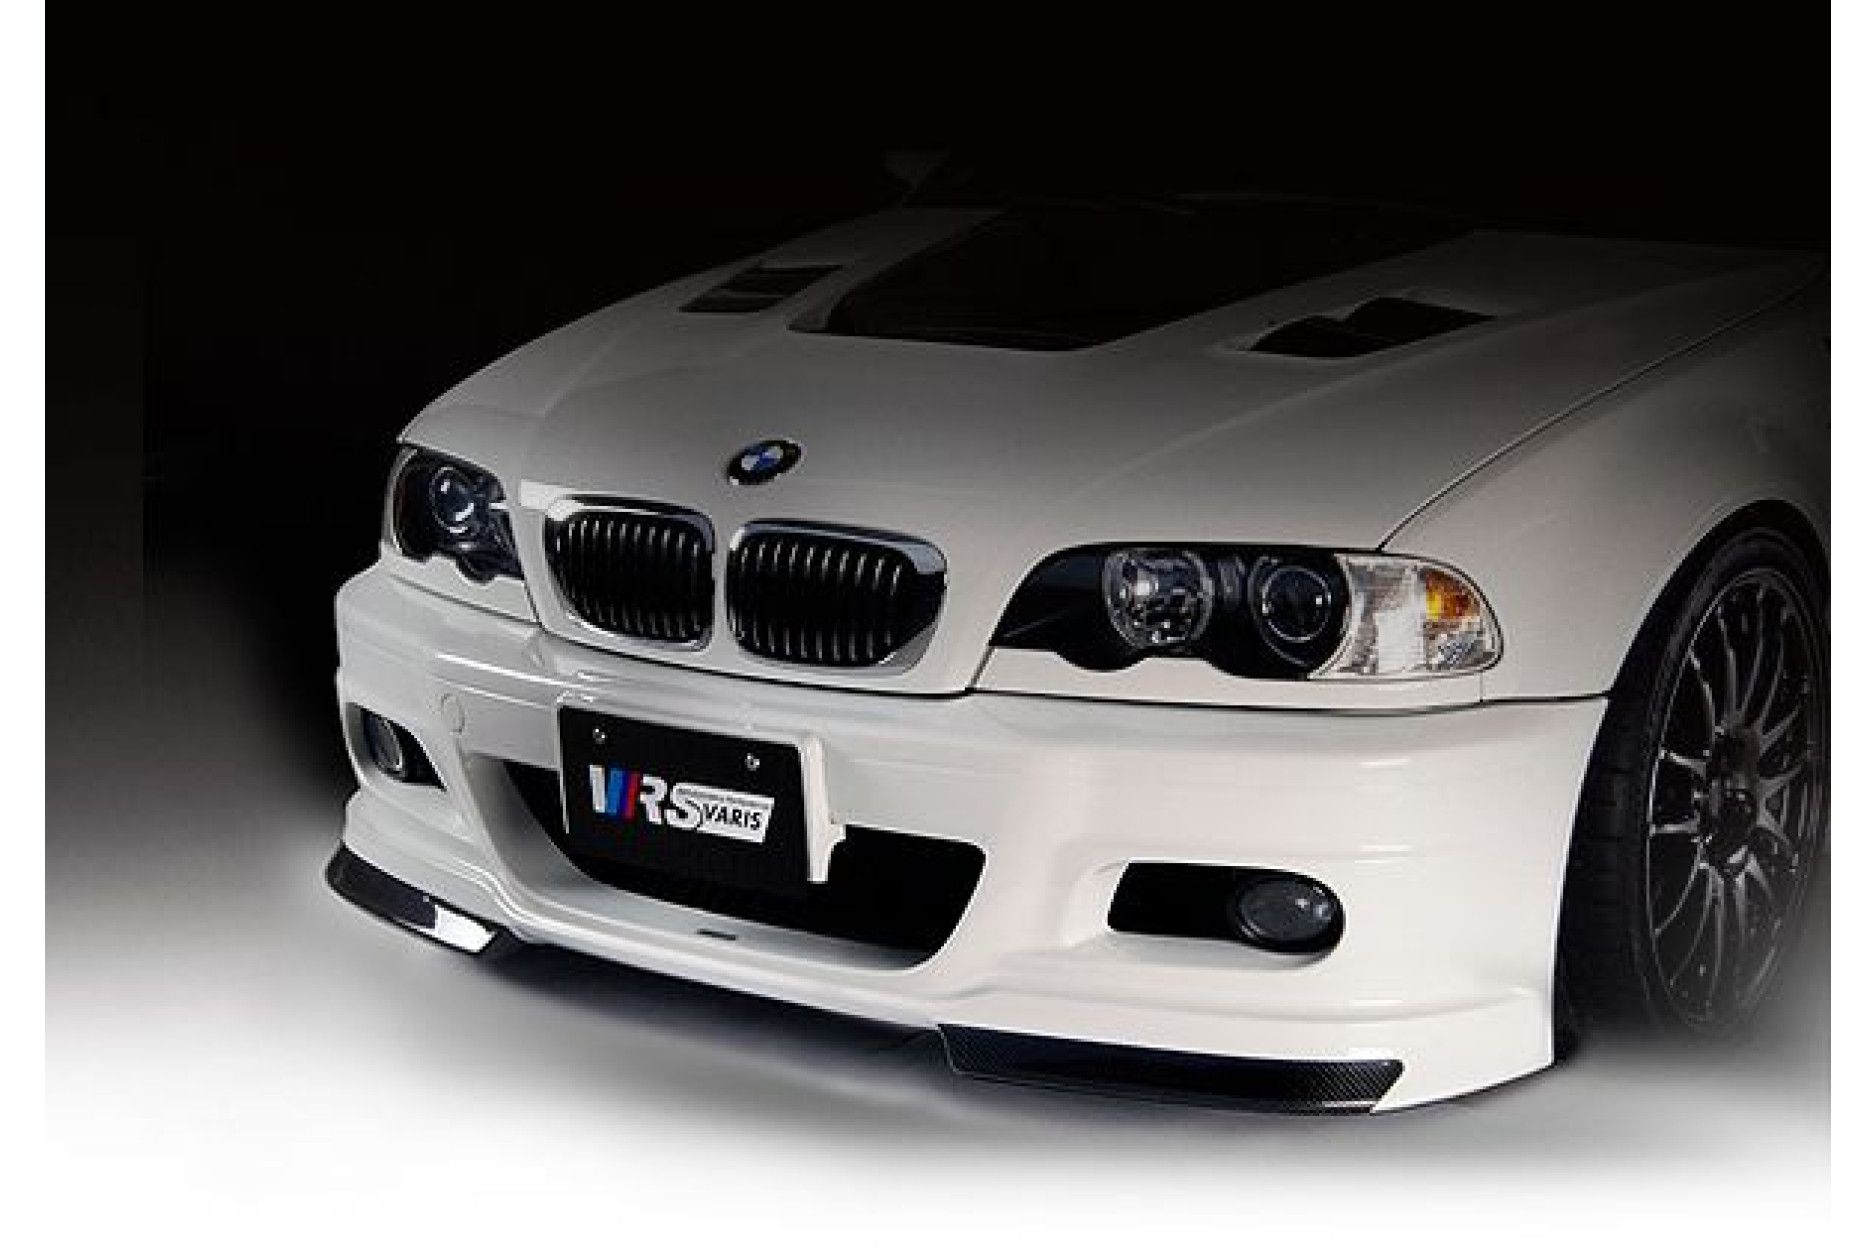 Varis front (carbon) for BMW E46 M3